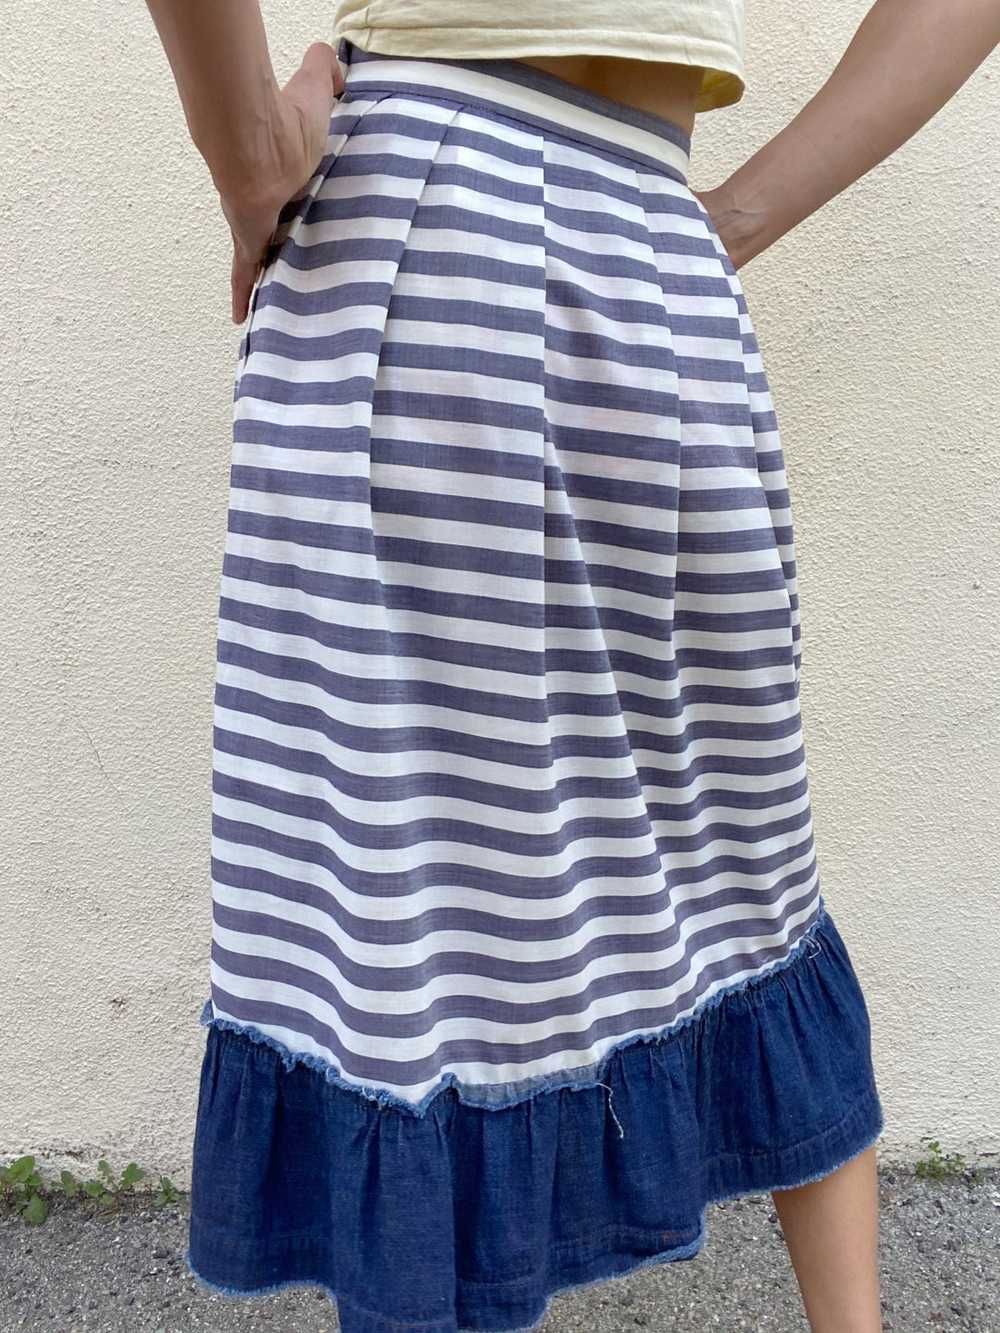 Comme De Garcons Striped Cotton Skirt - image 2